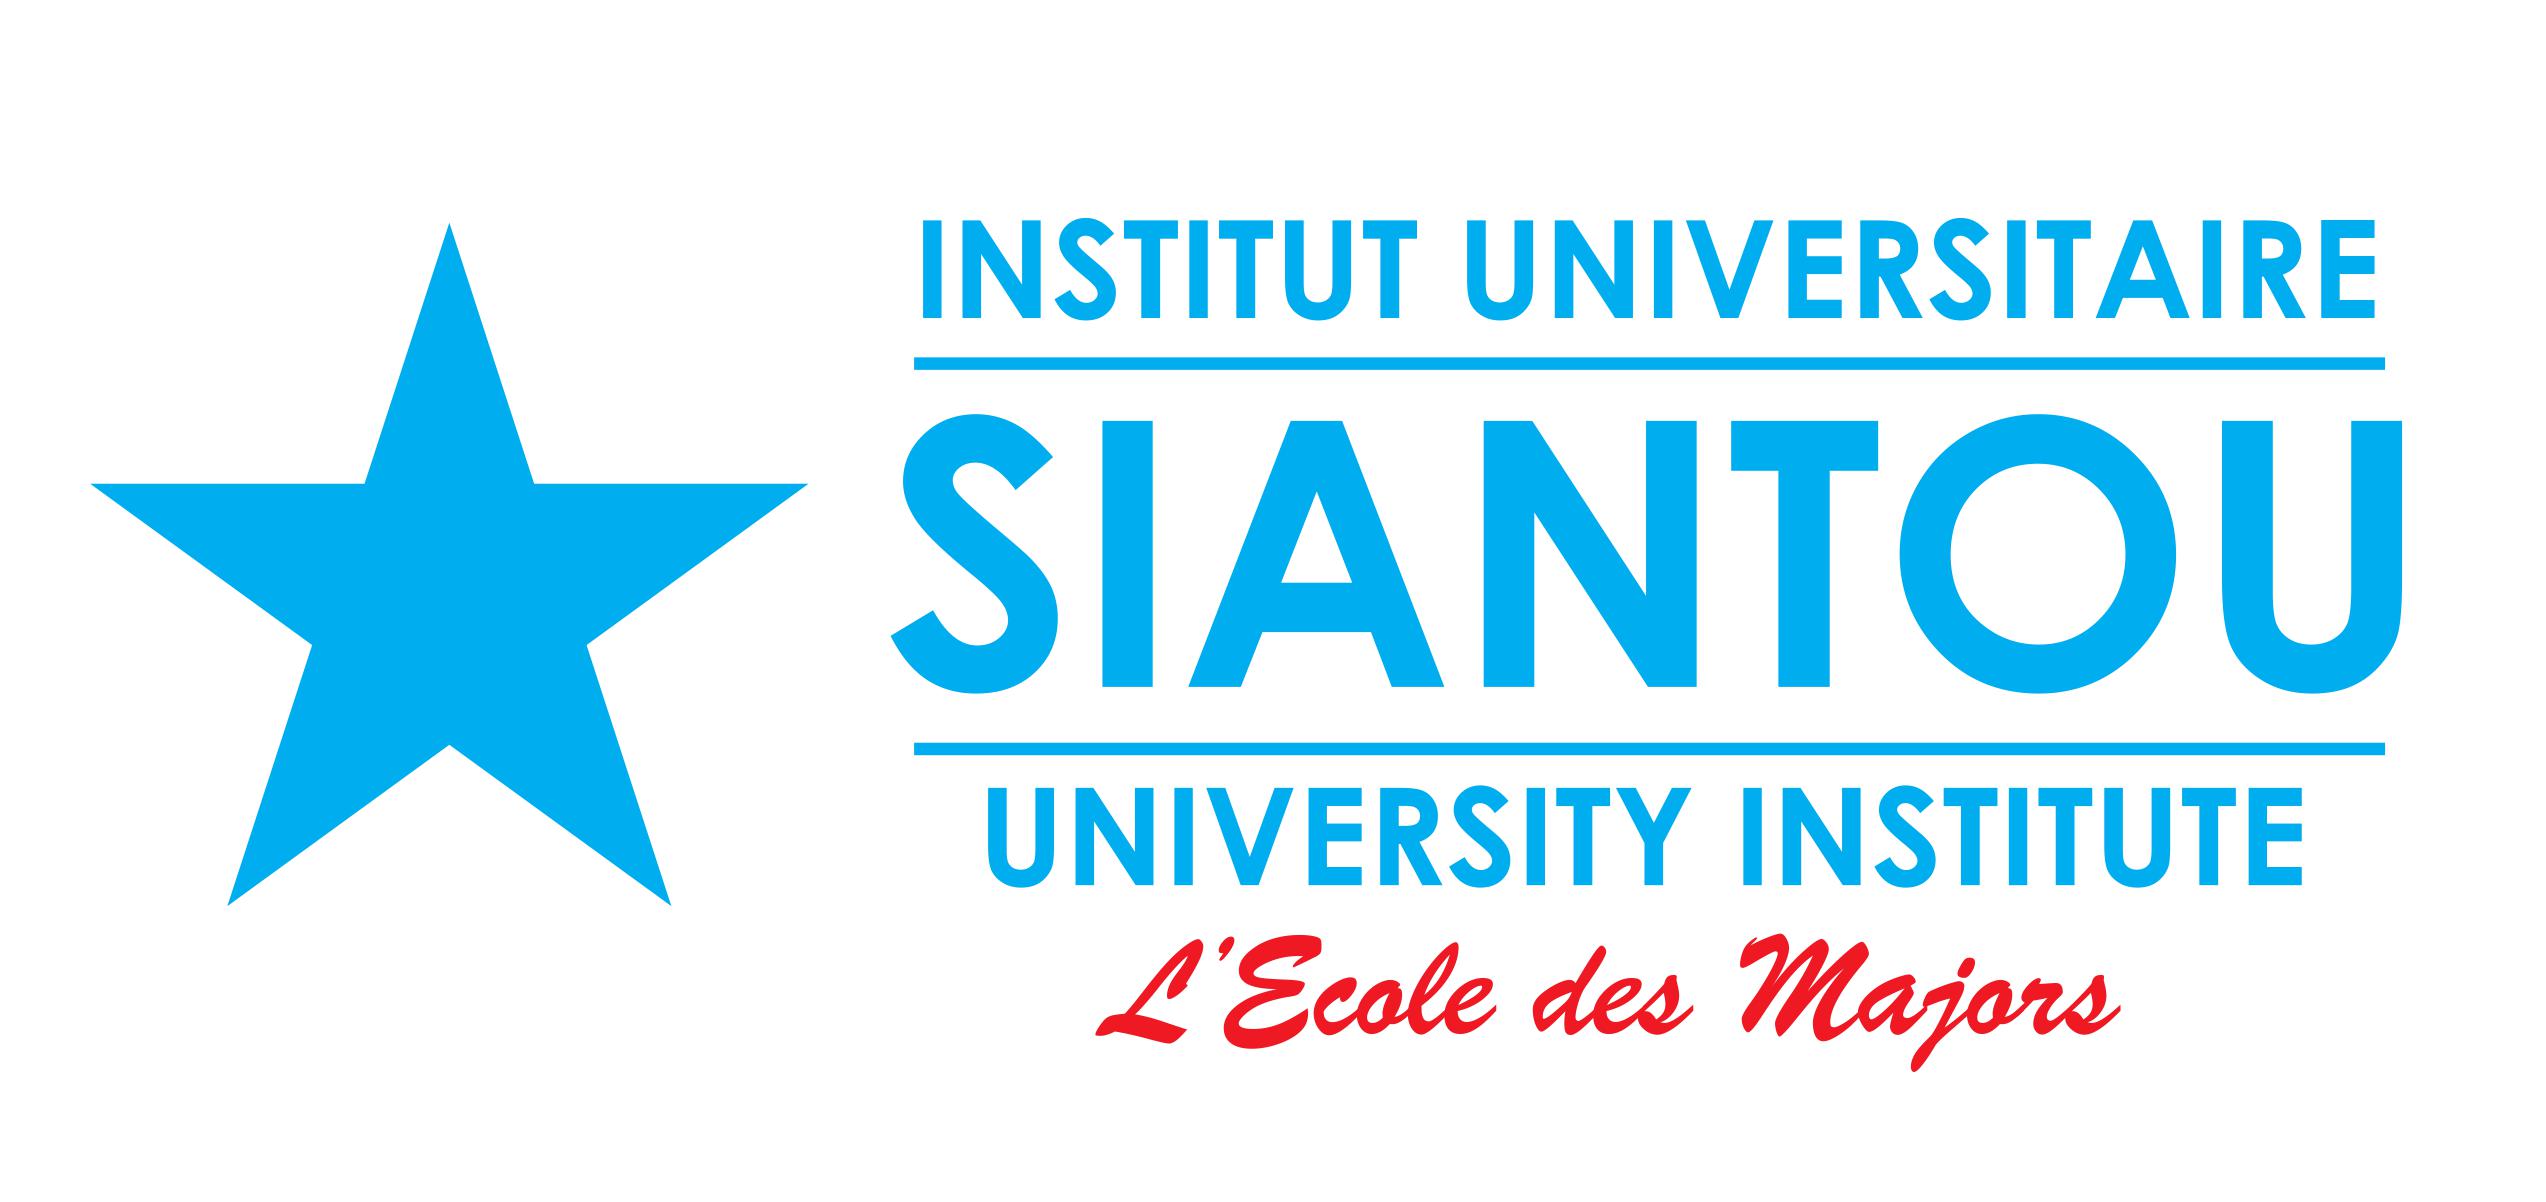 INSTITUT UNIVERSITAIRE SIANTOU: centre de formation professionnelle, académique au cameroun